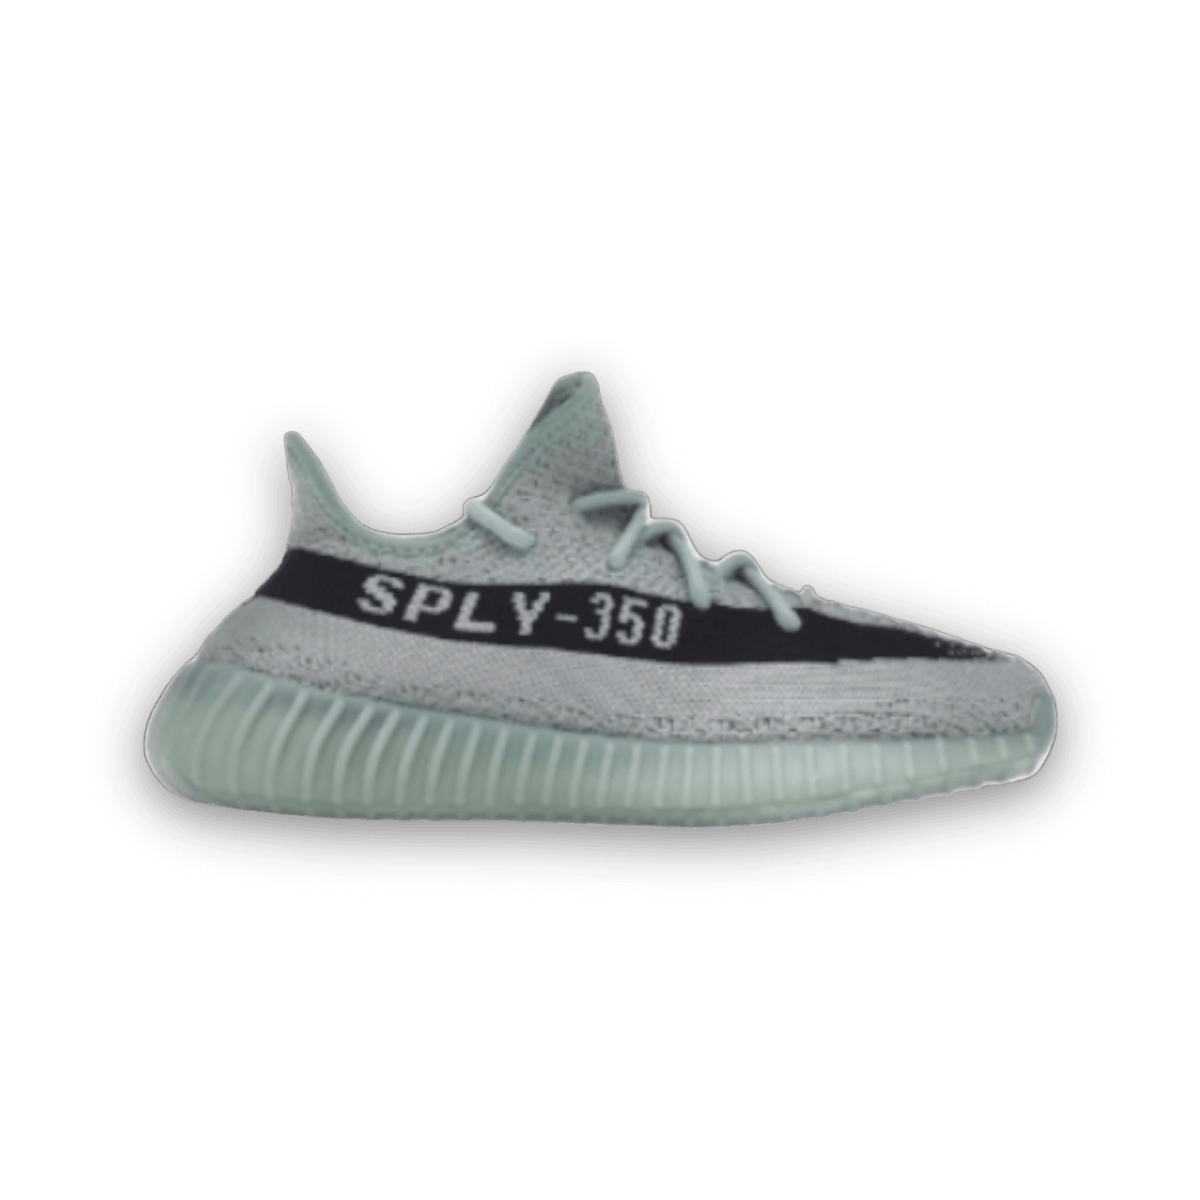 Yeezy Boost 350 V2 Salt - Low Sneaker - Yeezy - Jawns on Fire - sneakers